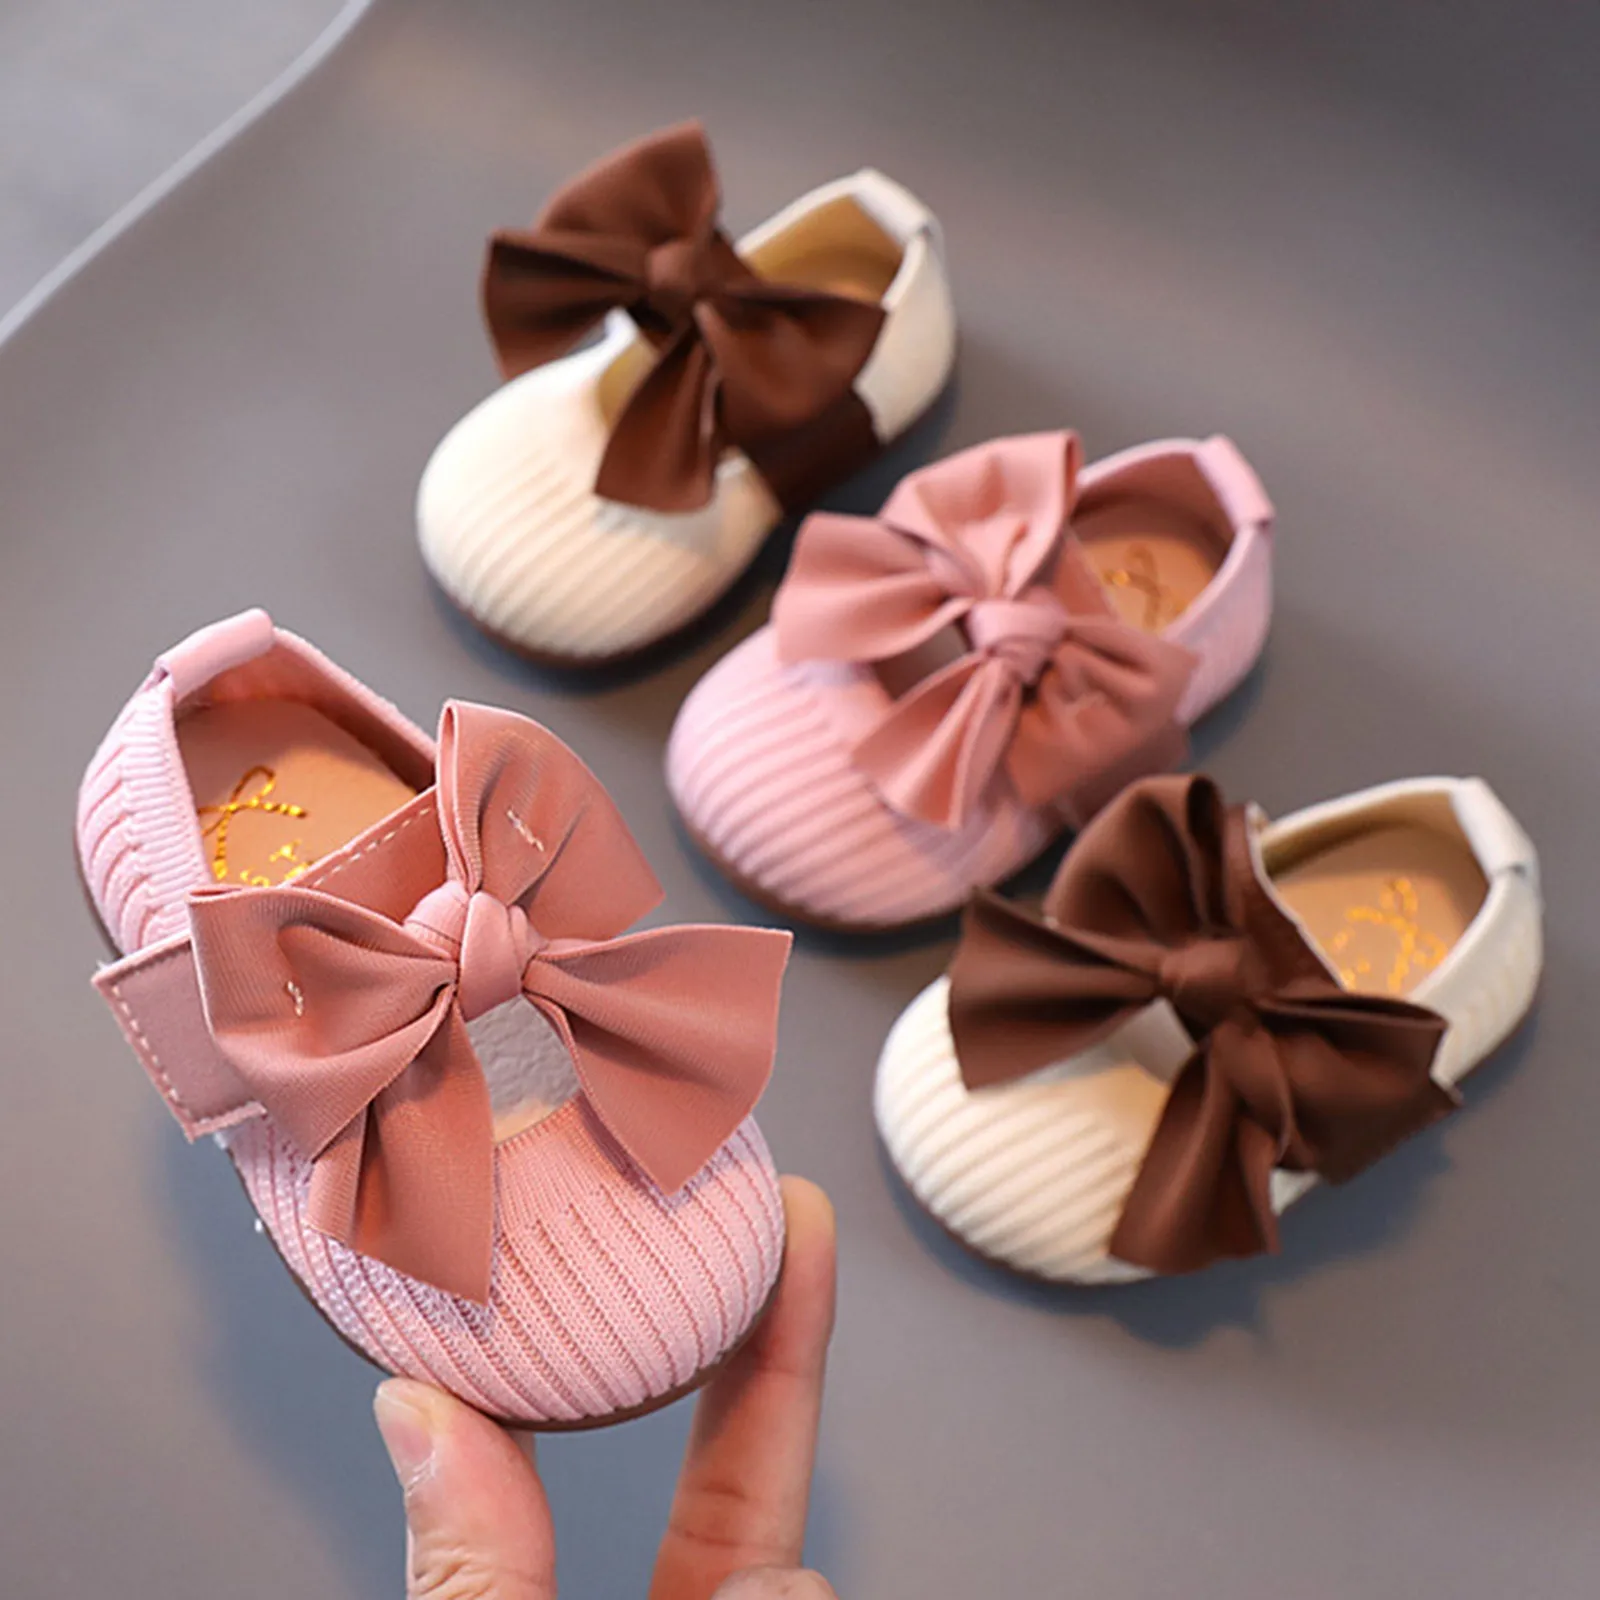 

Туфли детские с бантом, мягкая подошва, модная повседневная обувь для начинающих ходить принцесс, для начинающих ходить девочек